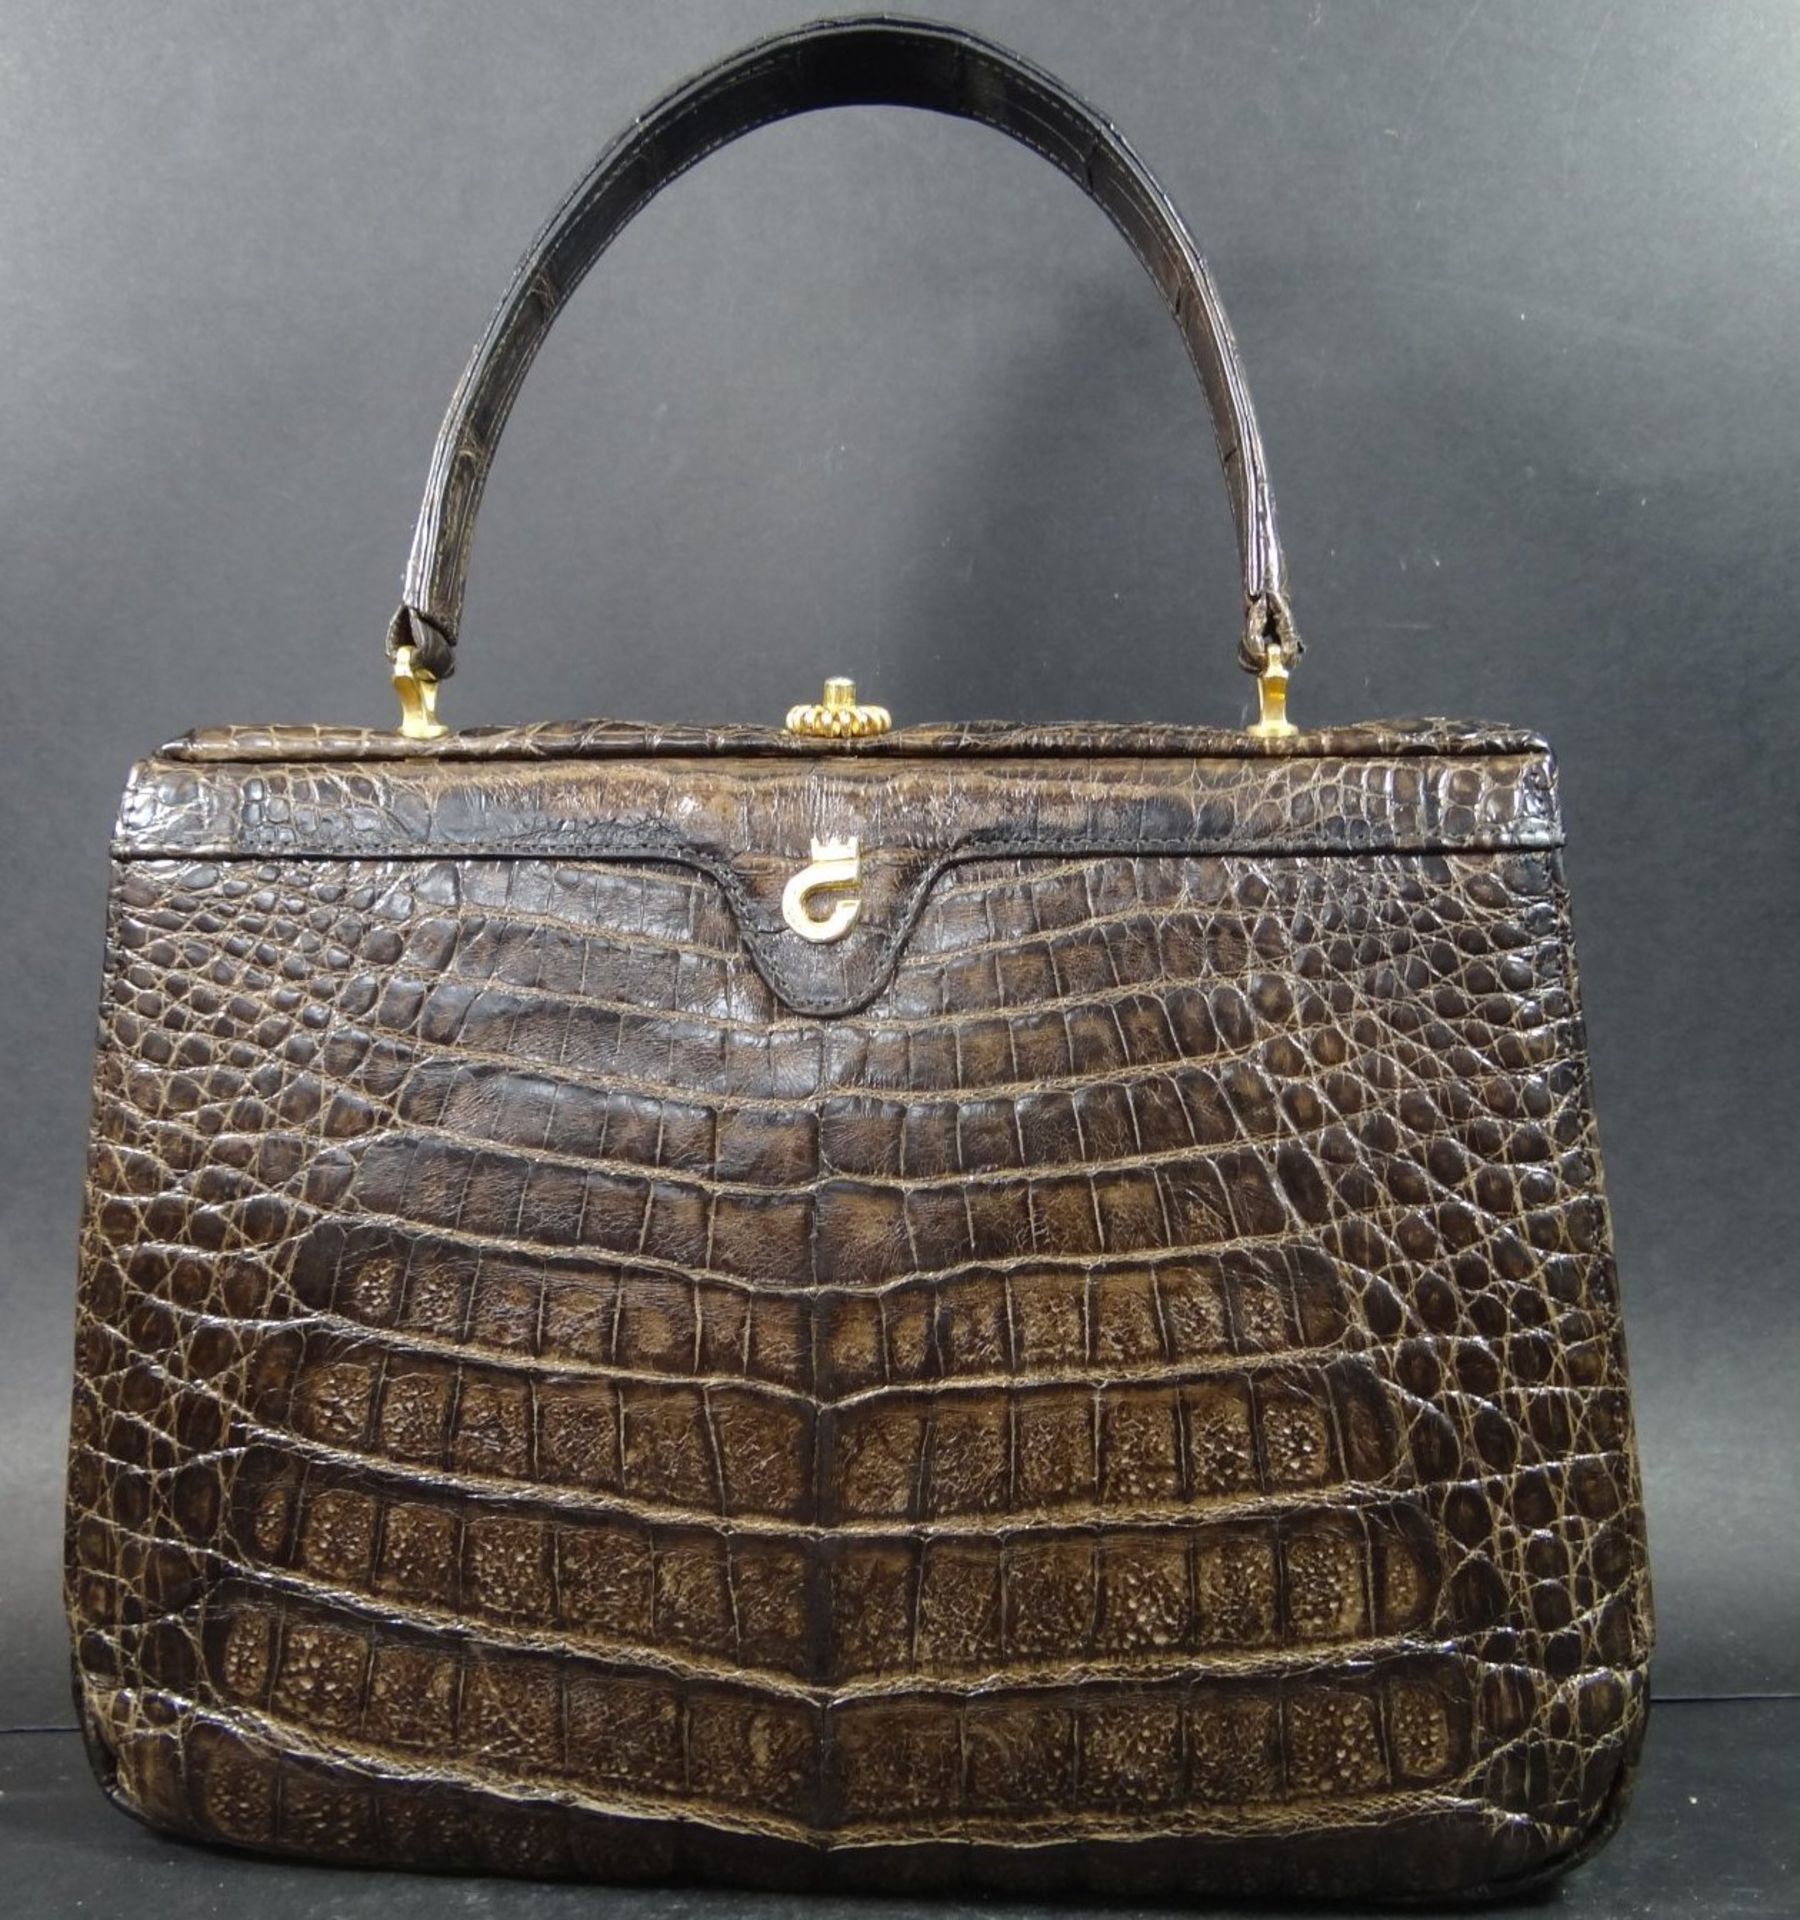 Krokoleder-Handtasche "Comtesse", 18x25cm